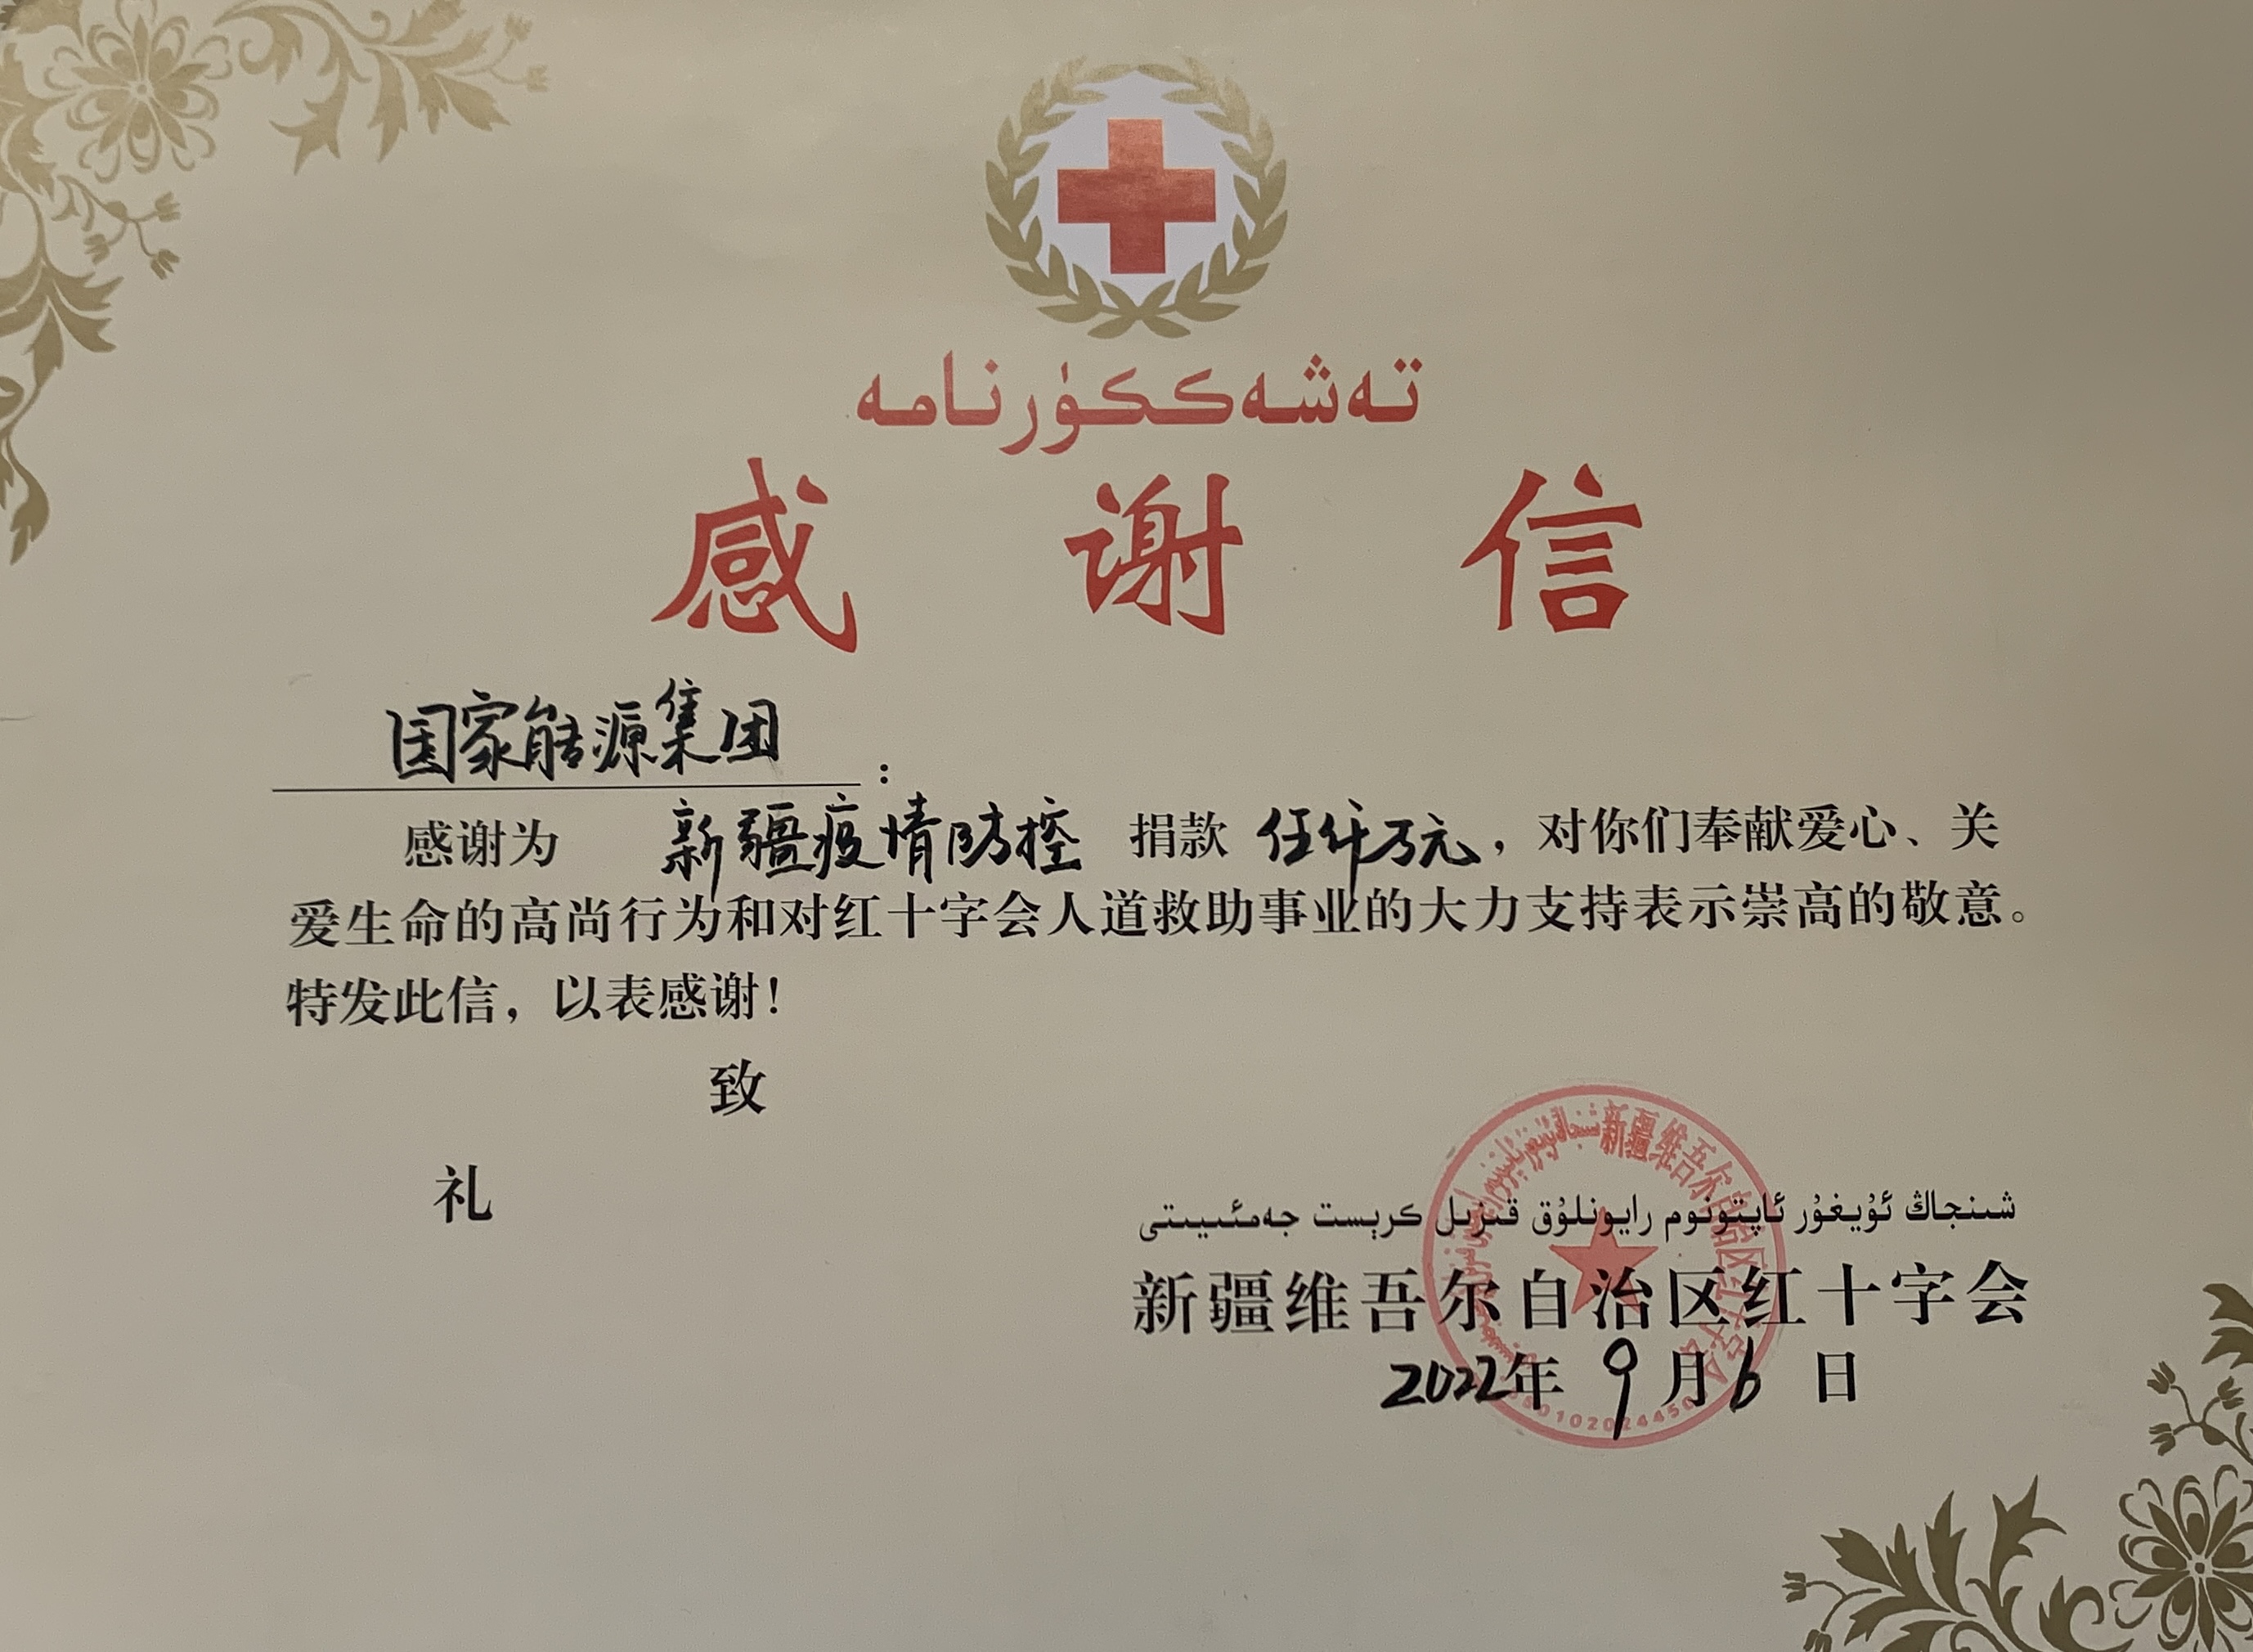 新疆维吾尔自治区红十字会